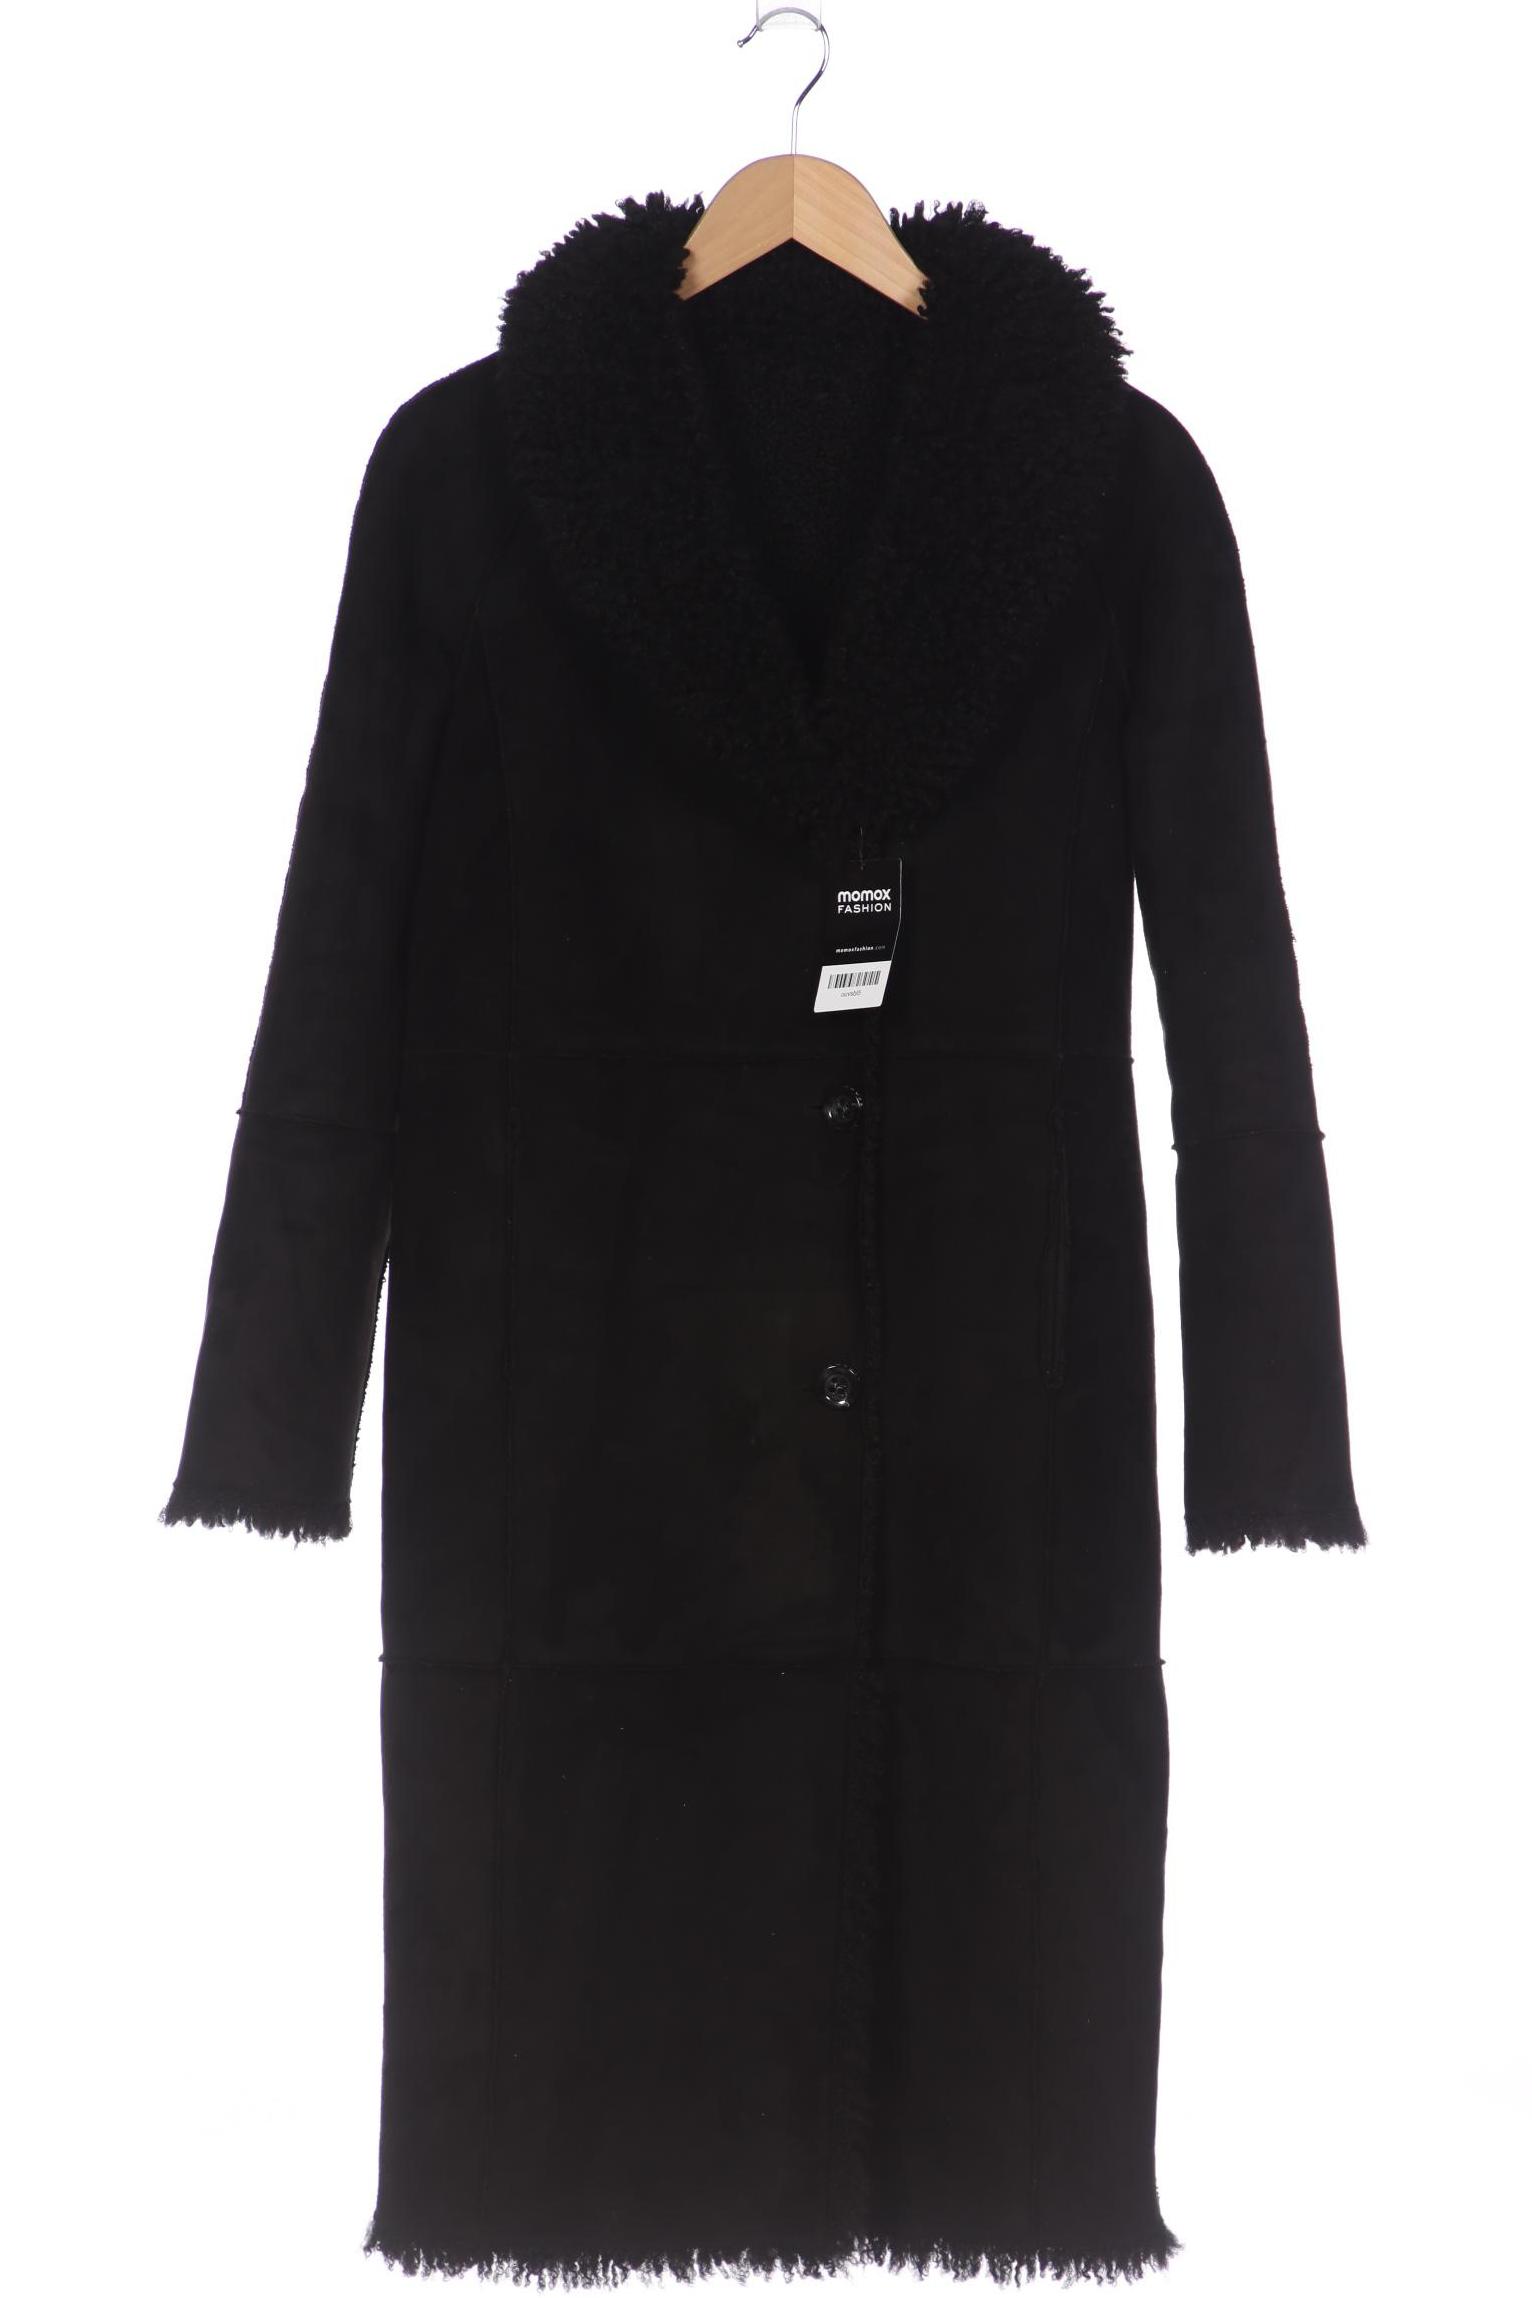 Beaumont Damen Mantel, schwarz von Beaumont